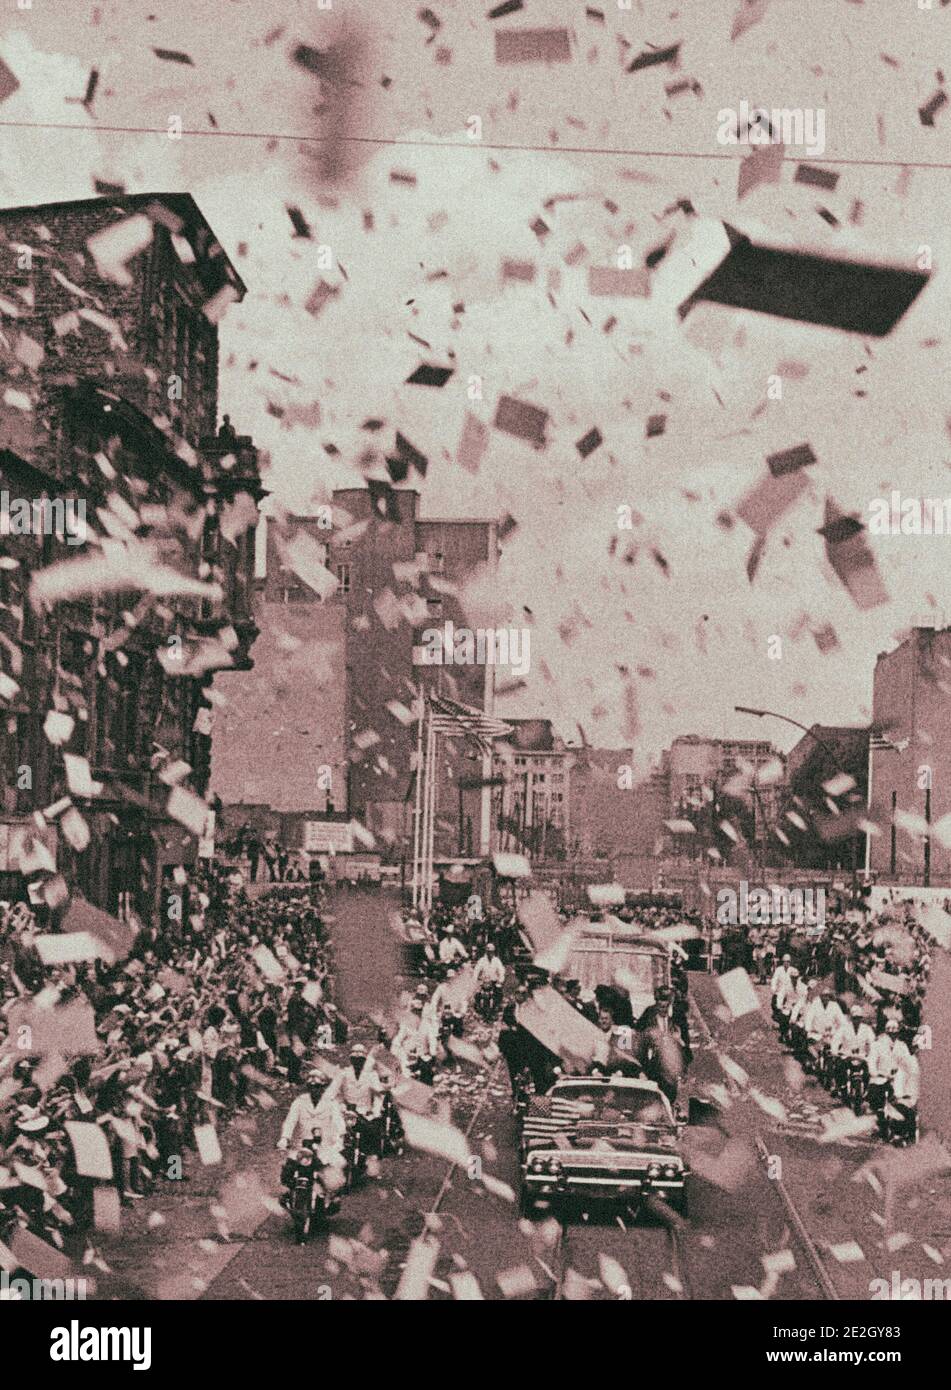 Foto d'archivio del presidente Kennedy in Germania. Blizzard di carta grattugiata dagli edifici più alti di Berlino, ma non fa altro che cancellare il parere del presidente KE Foto Stock